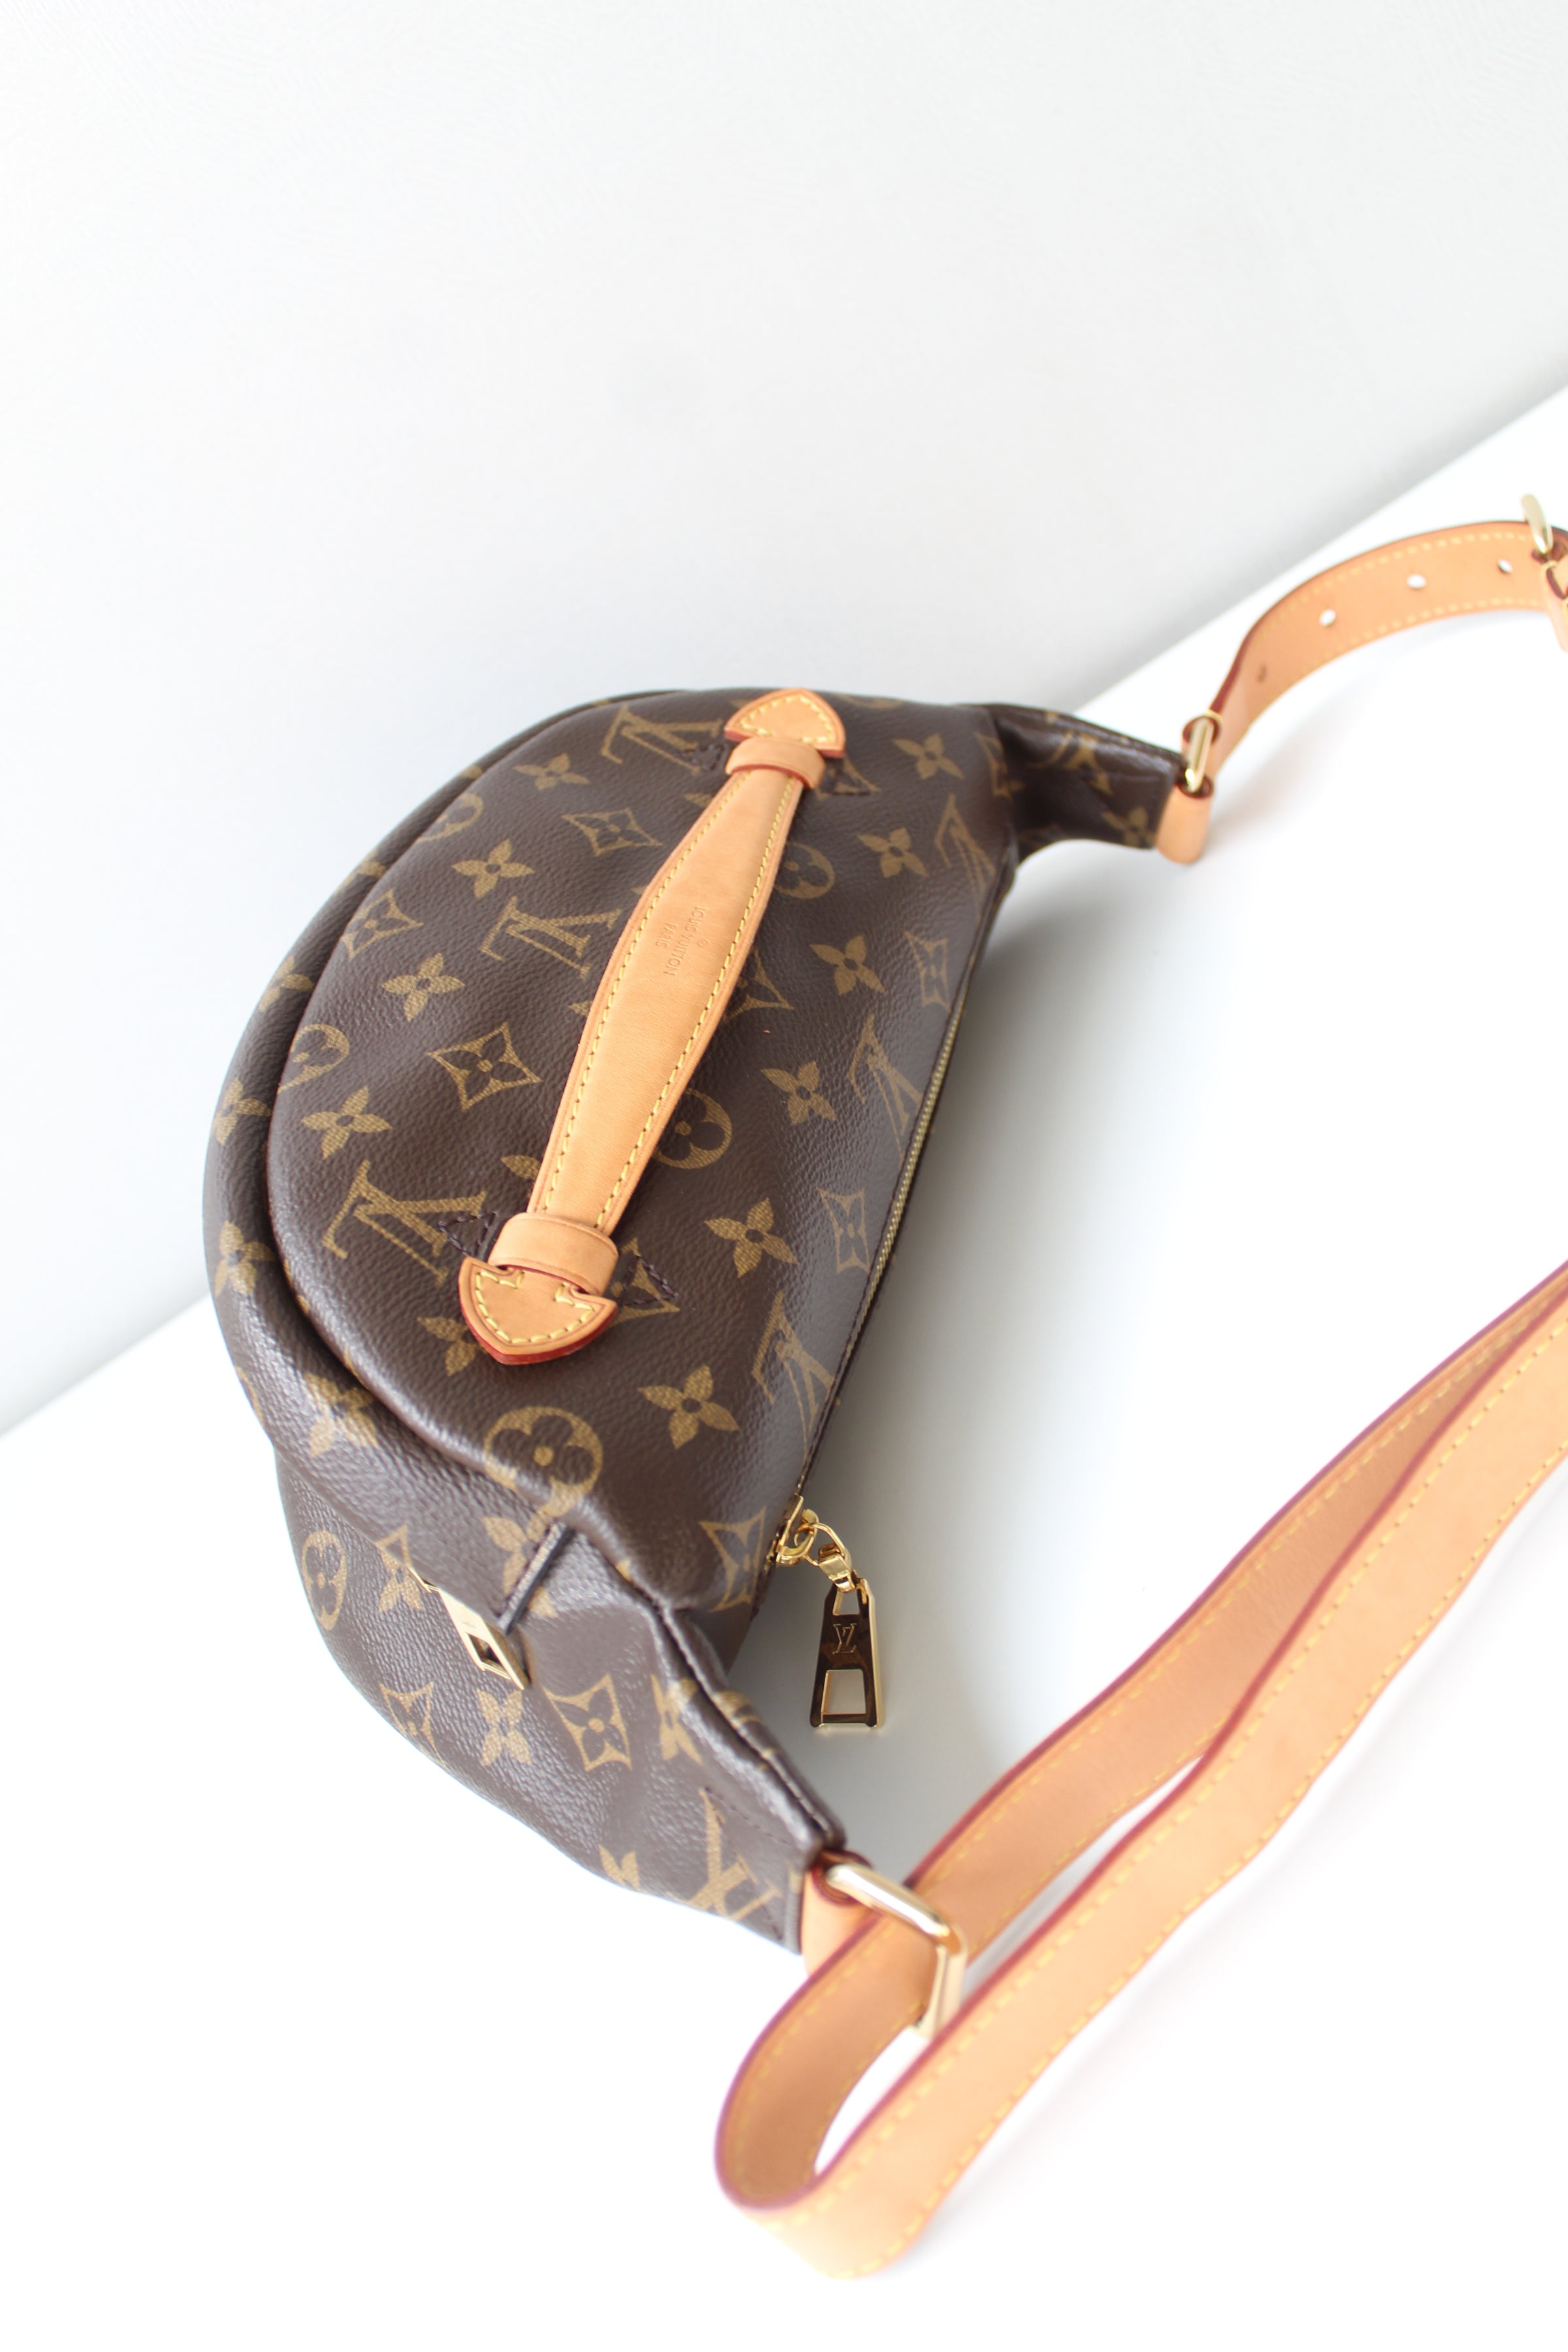 Louis Vuitton Bum bag – The Brand Collector